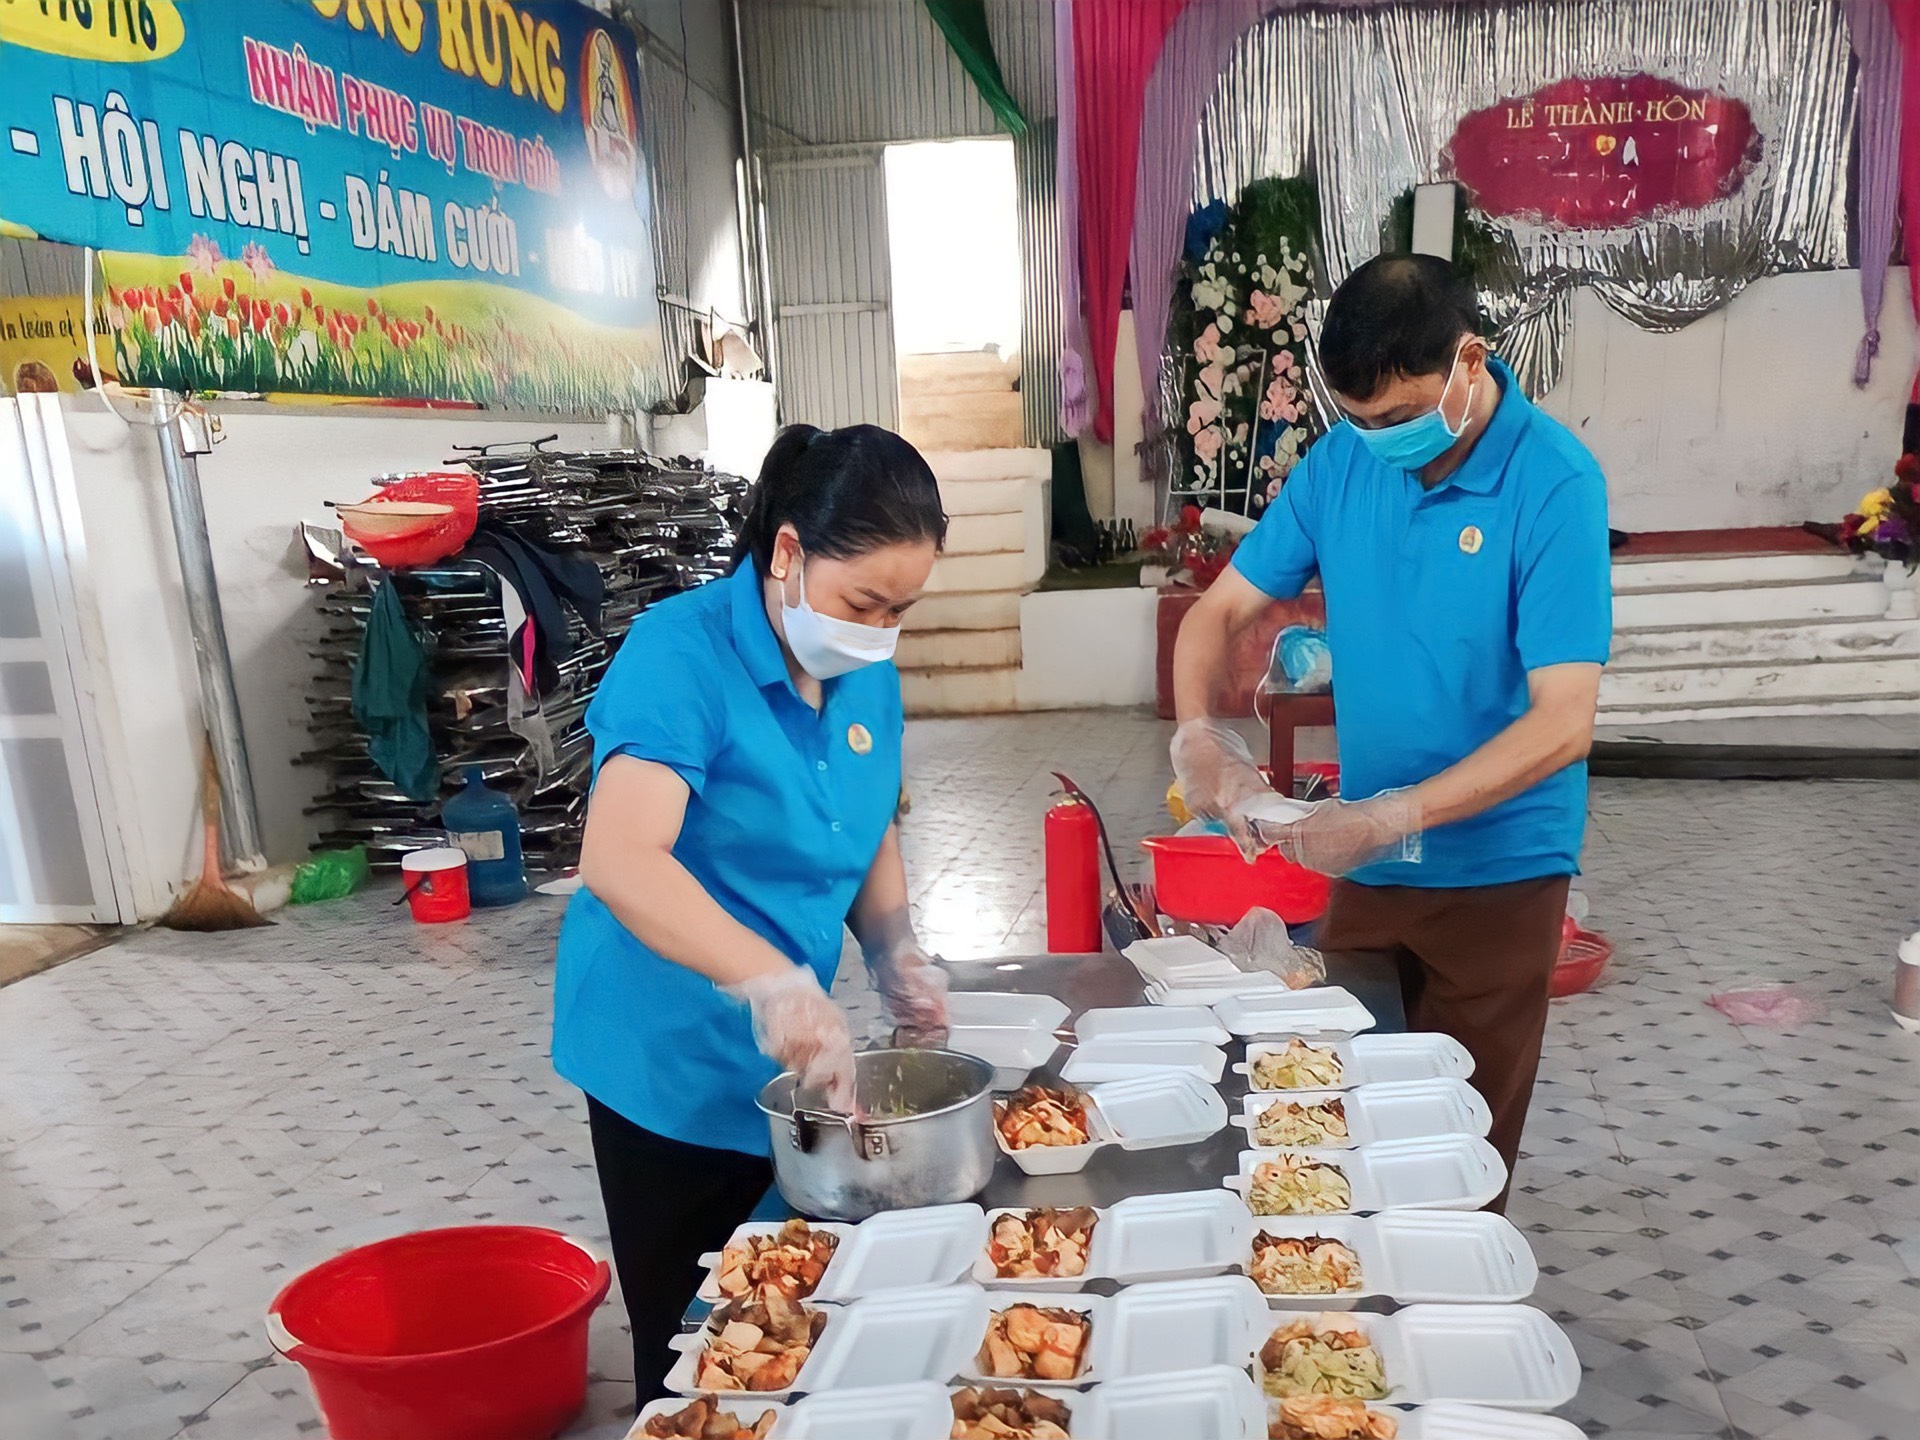 LĐLĐ huyện Quỳnh Nhai, Sơn La tổ chức nấu bữa cơm 0 đồng cho bệnh nhân mắc bệnh COVID-19. Ảnh: Minh Thành